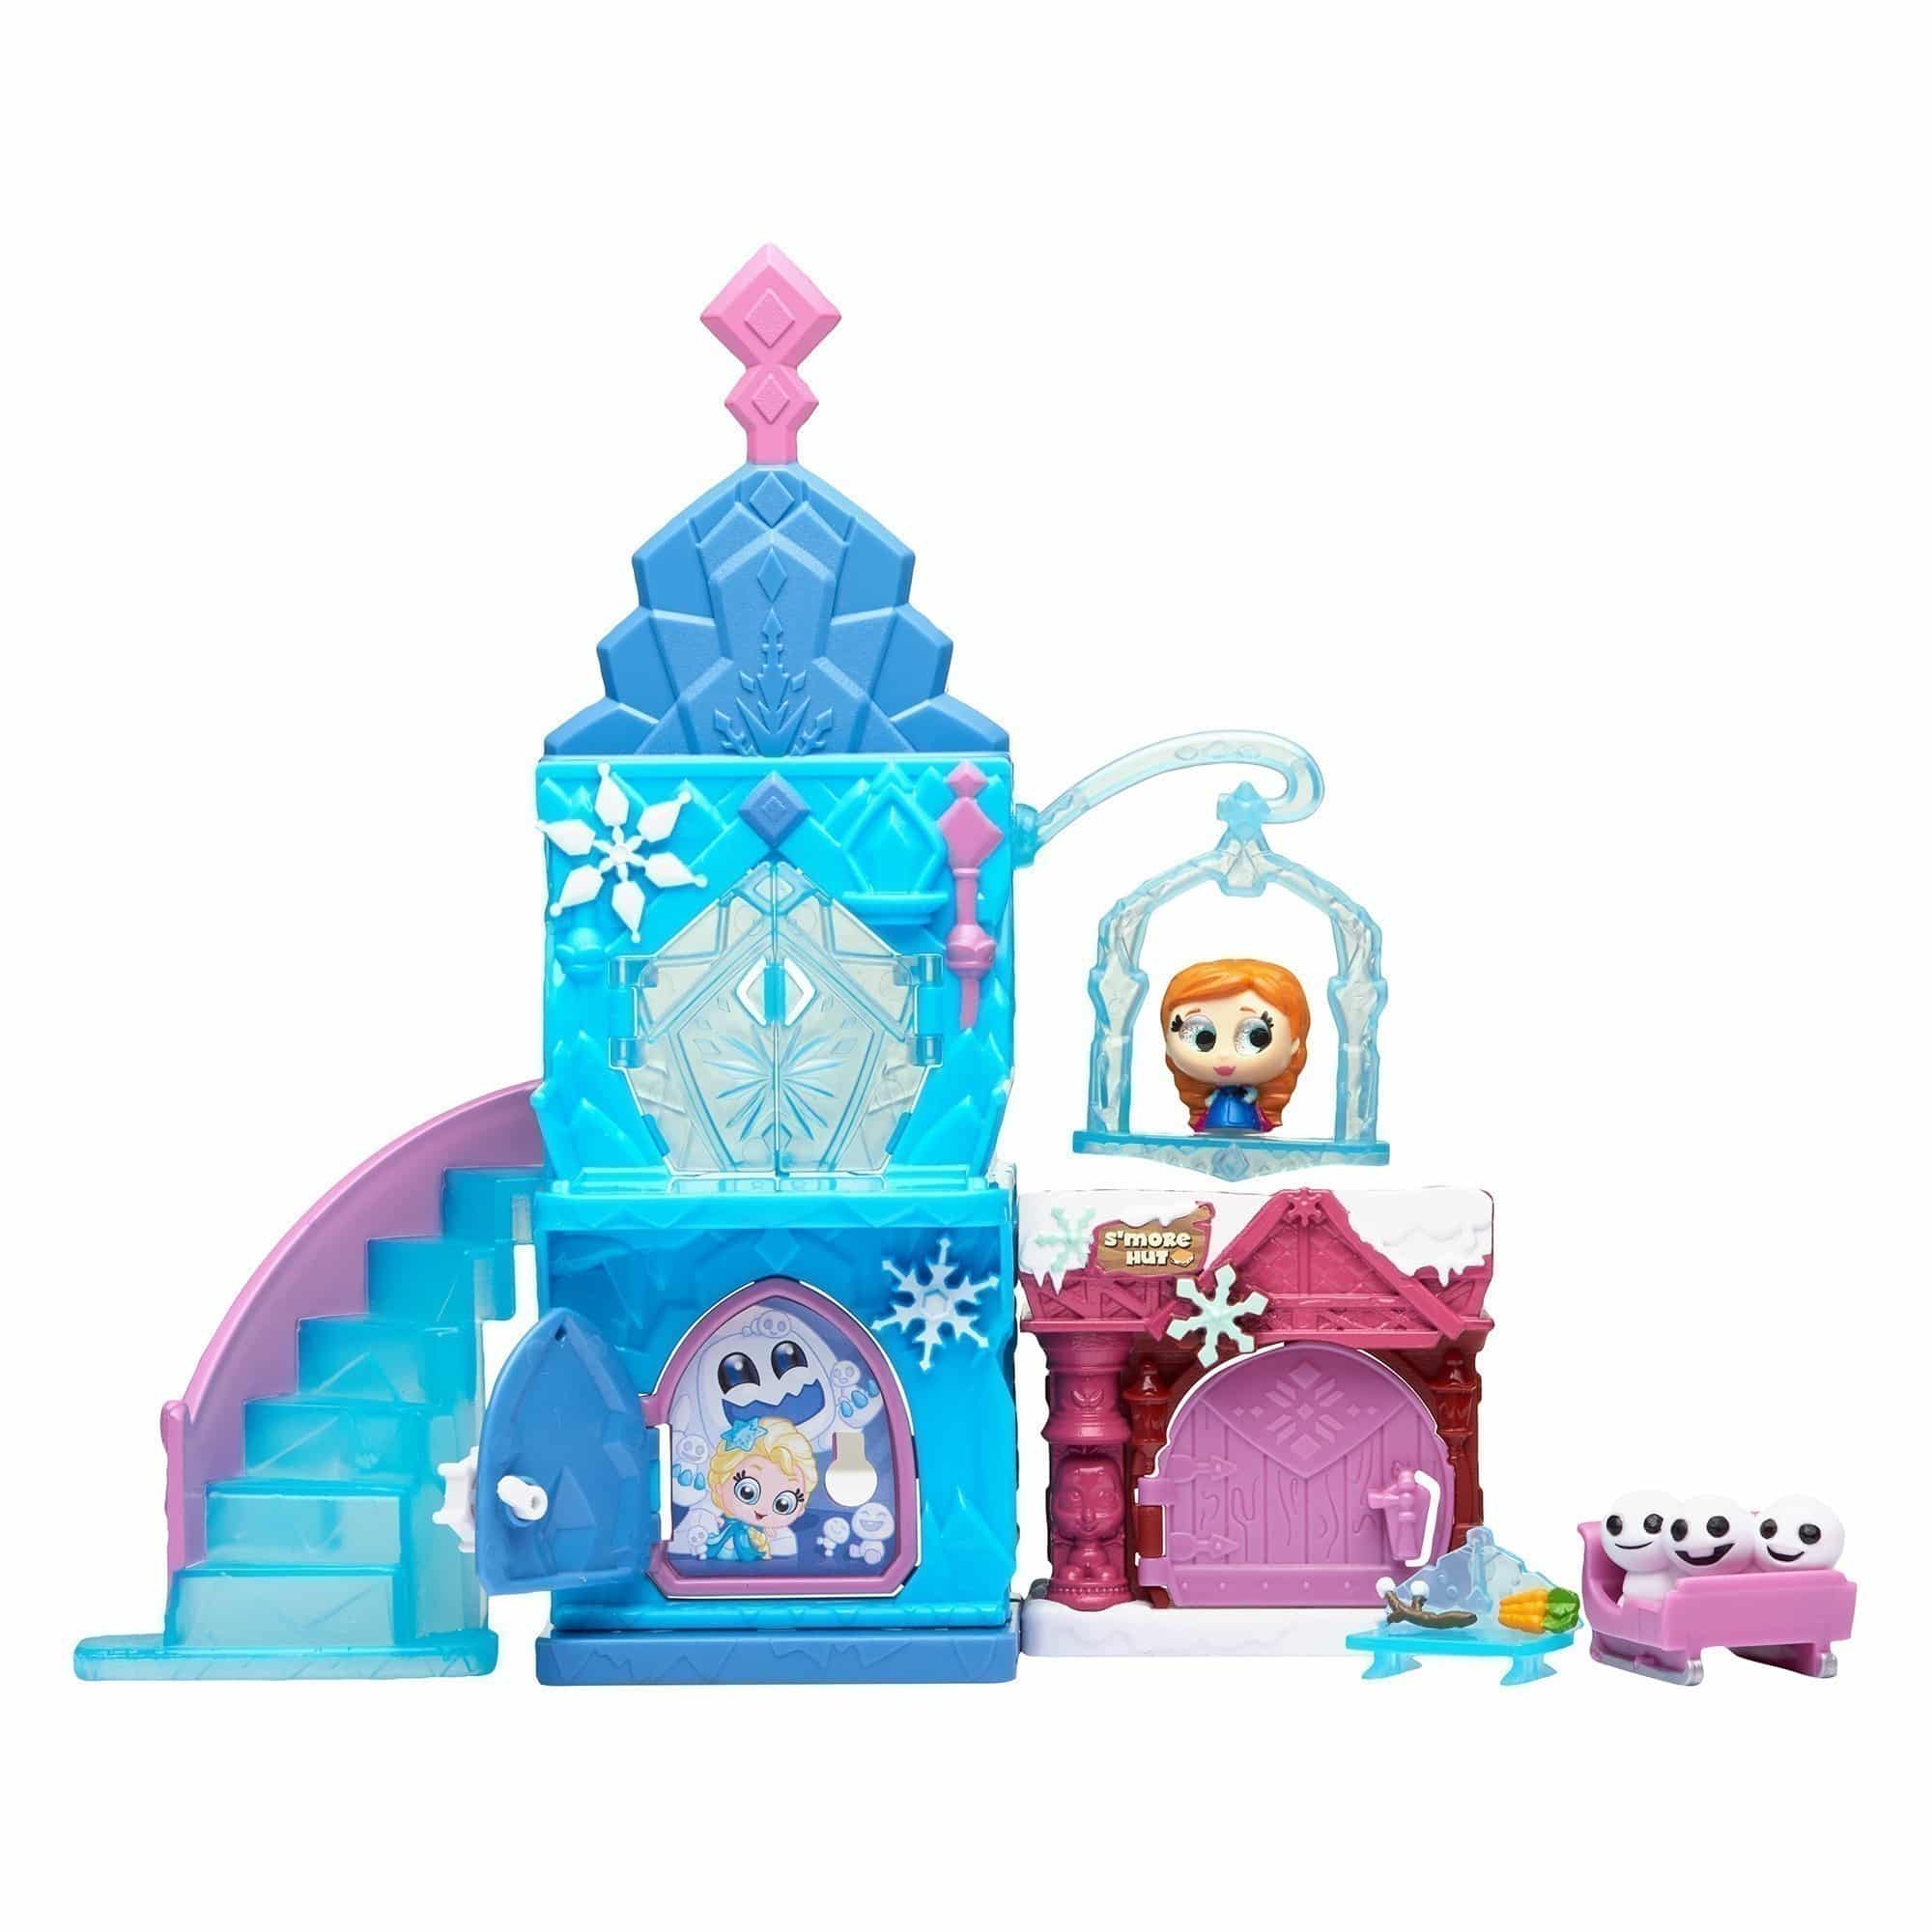 Disney Doorables - Frozen Ice Castle Theme Playset